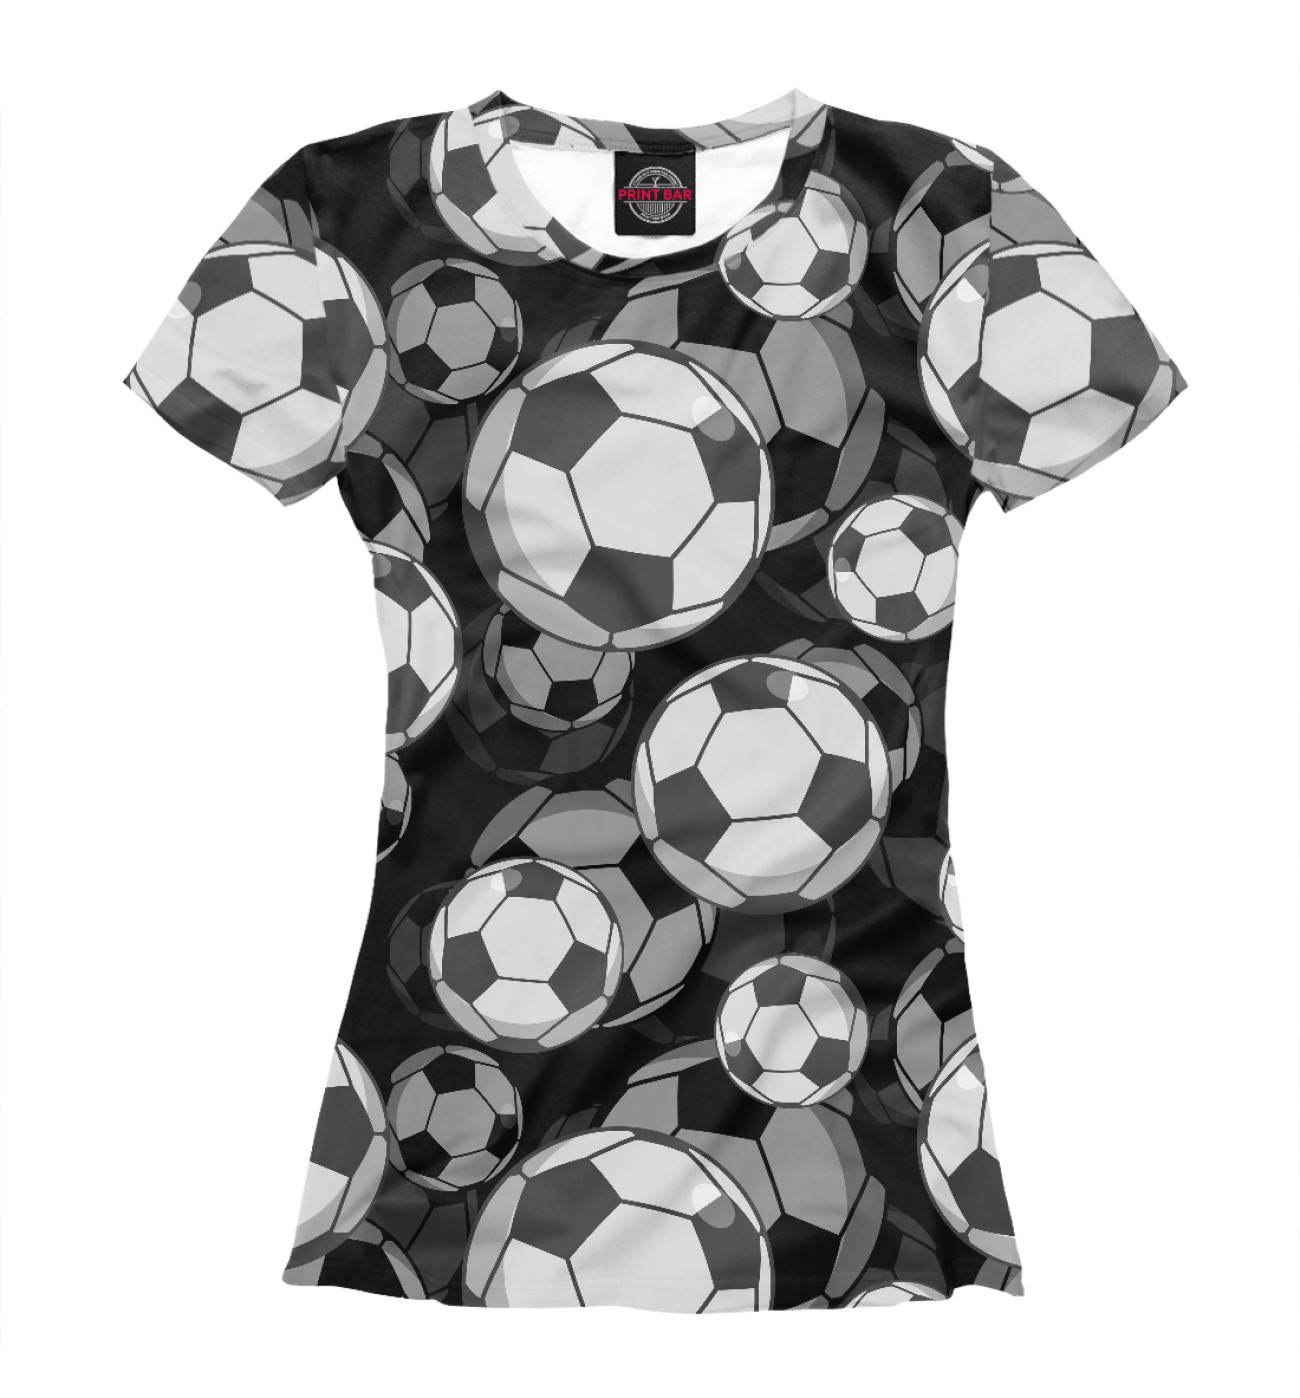 Женская Футболка Футбольные мячи, артикул: FTO-635392-fut-1